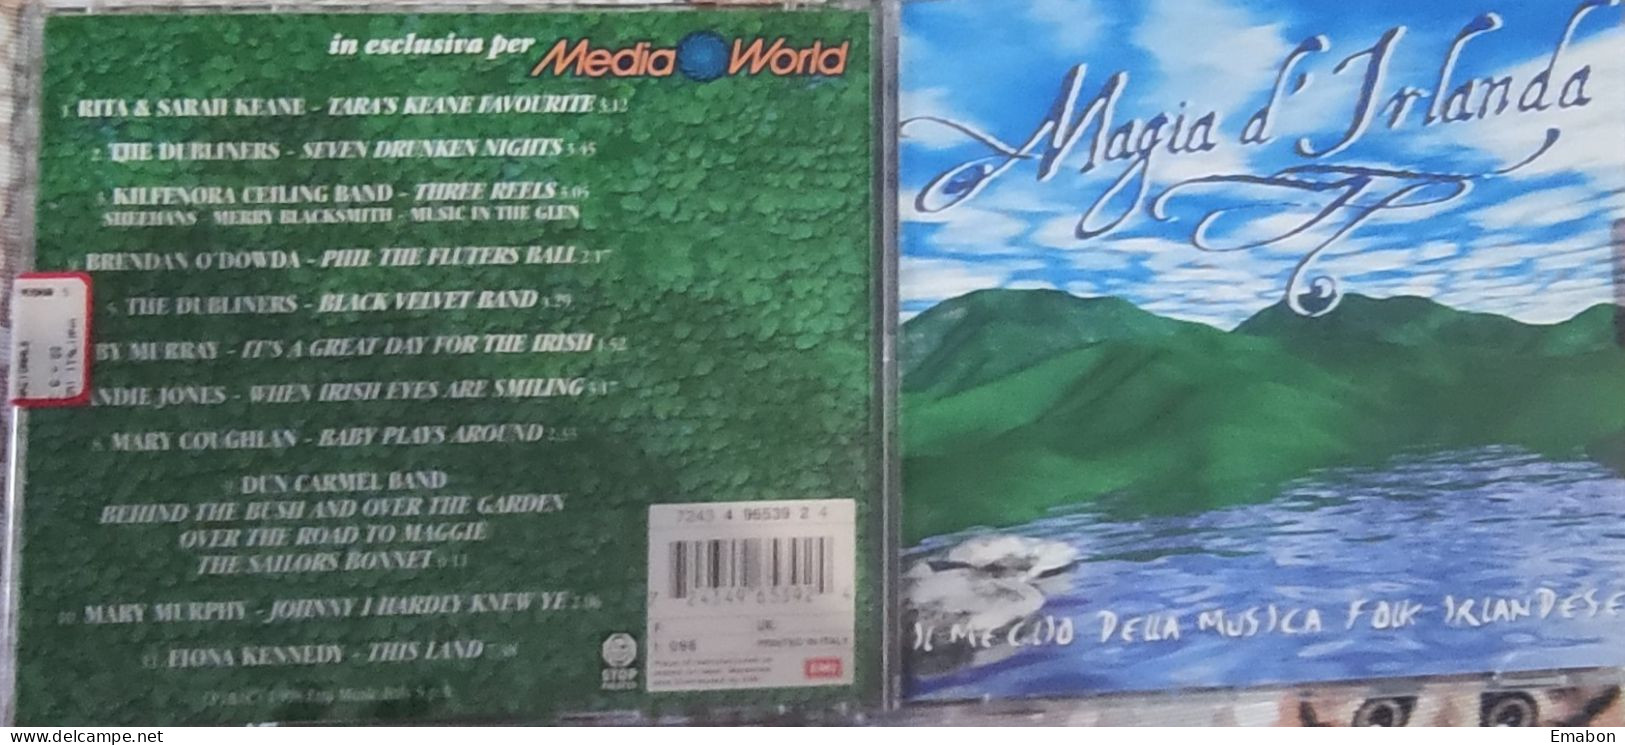 BORGATTA - Cd  - MAGIA D'IRLANDA - IL MEGLIO DELLA MUSICA FOLK IRLANDESE - EMI MUSIC 1998 -  USATO In Buono Stato - Altri - Inglese